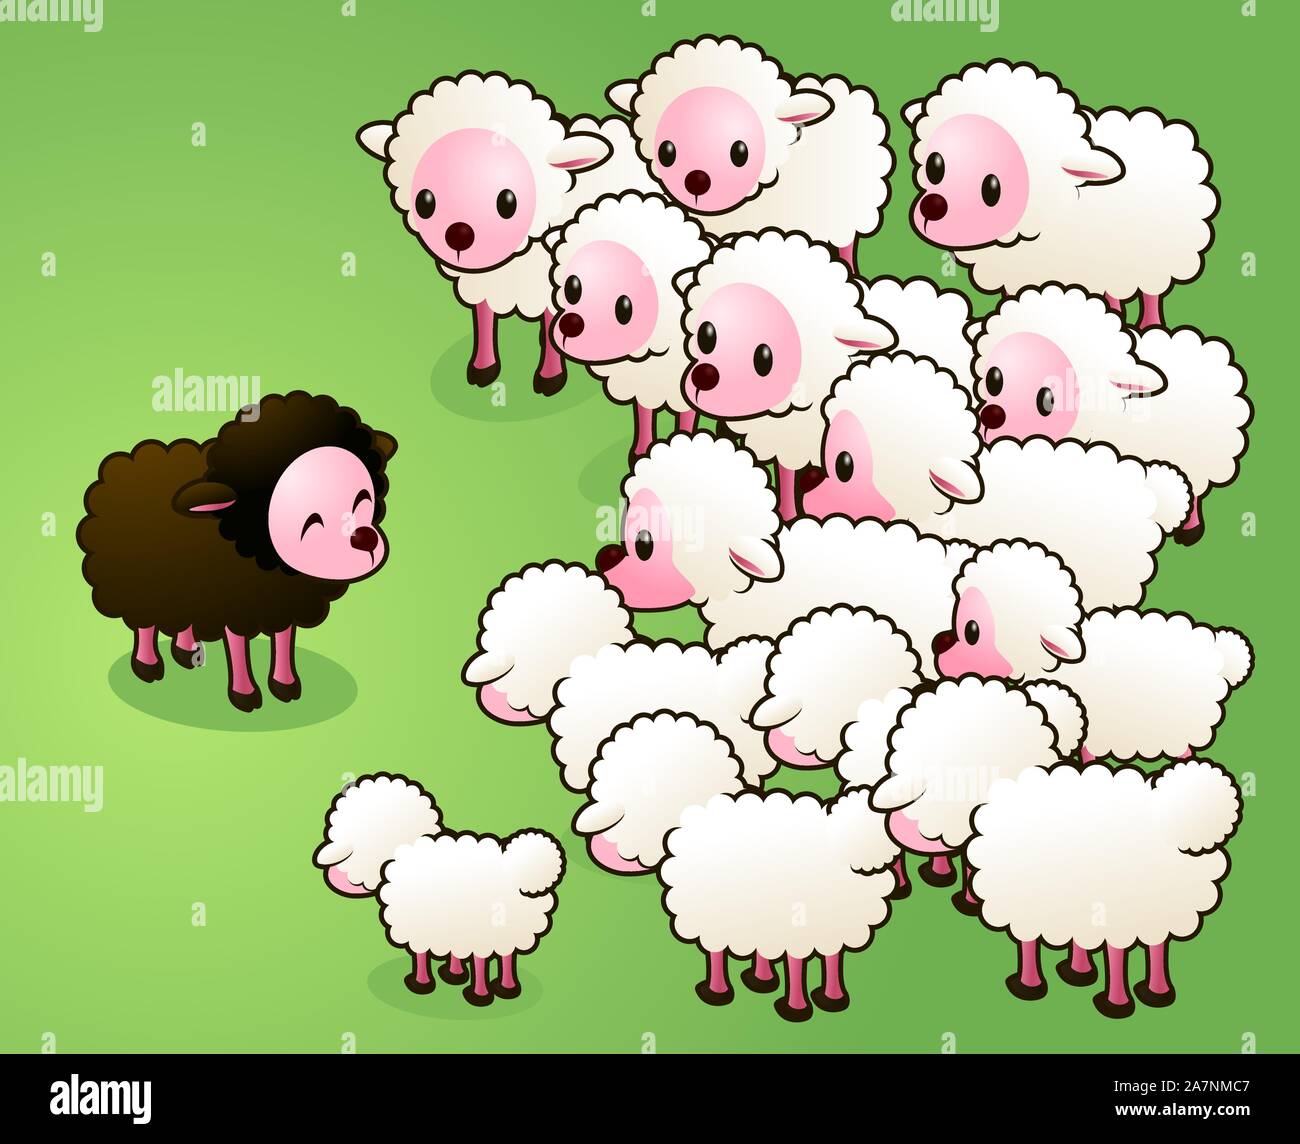 Портит стадо. Паршивая овца в стаде. Чёрная овца в семье. Блеяние овцы. Овцы стадо мультяшные.